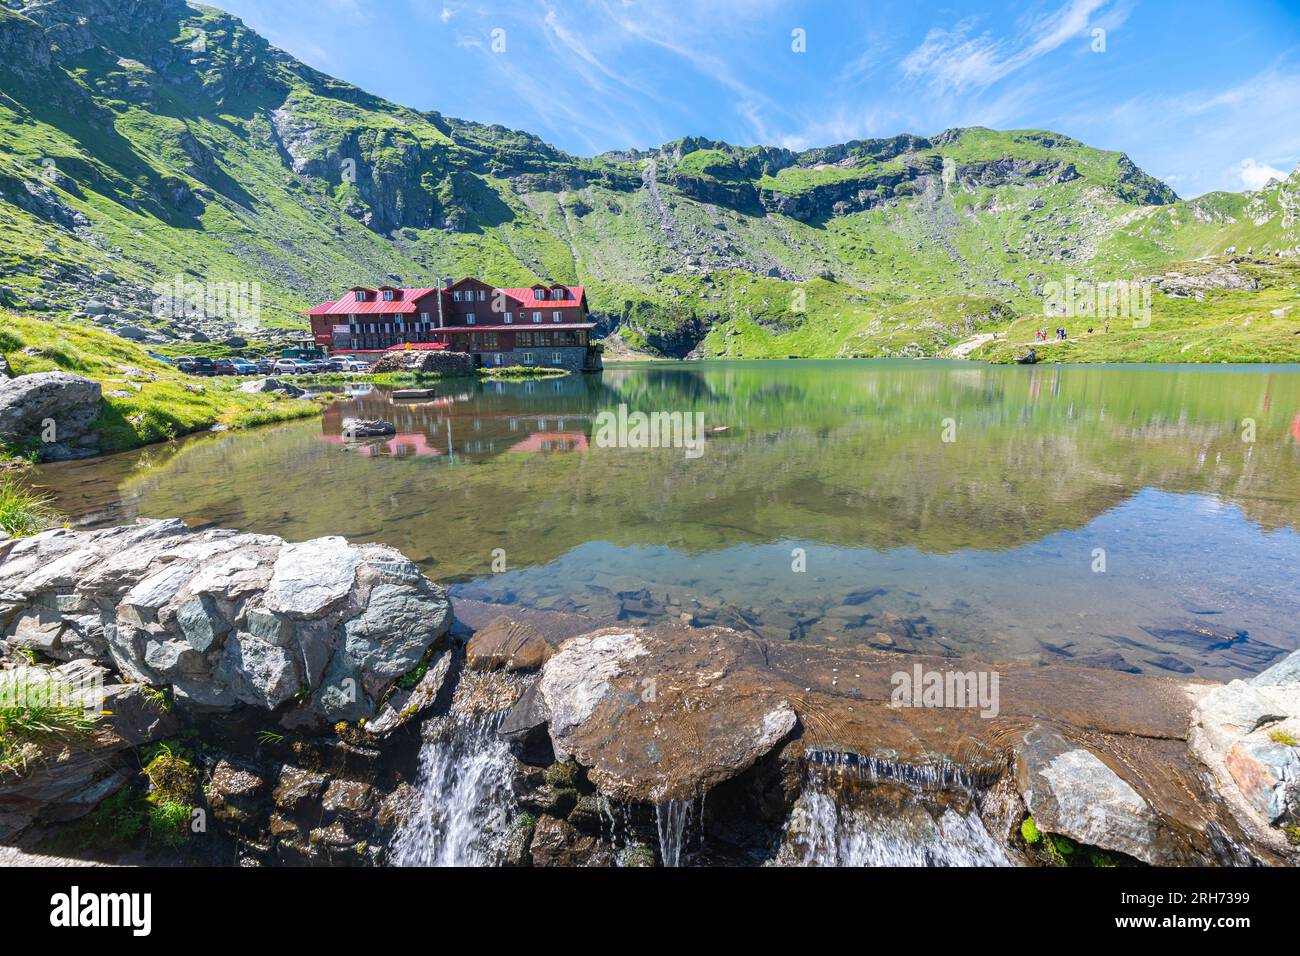 Famous Bâlea Lake at the summit of the Transfăgărășan Mountain Pass in Romania Stock Photo